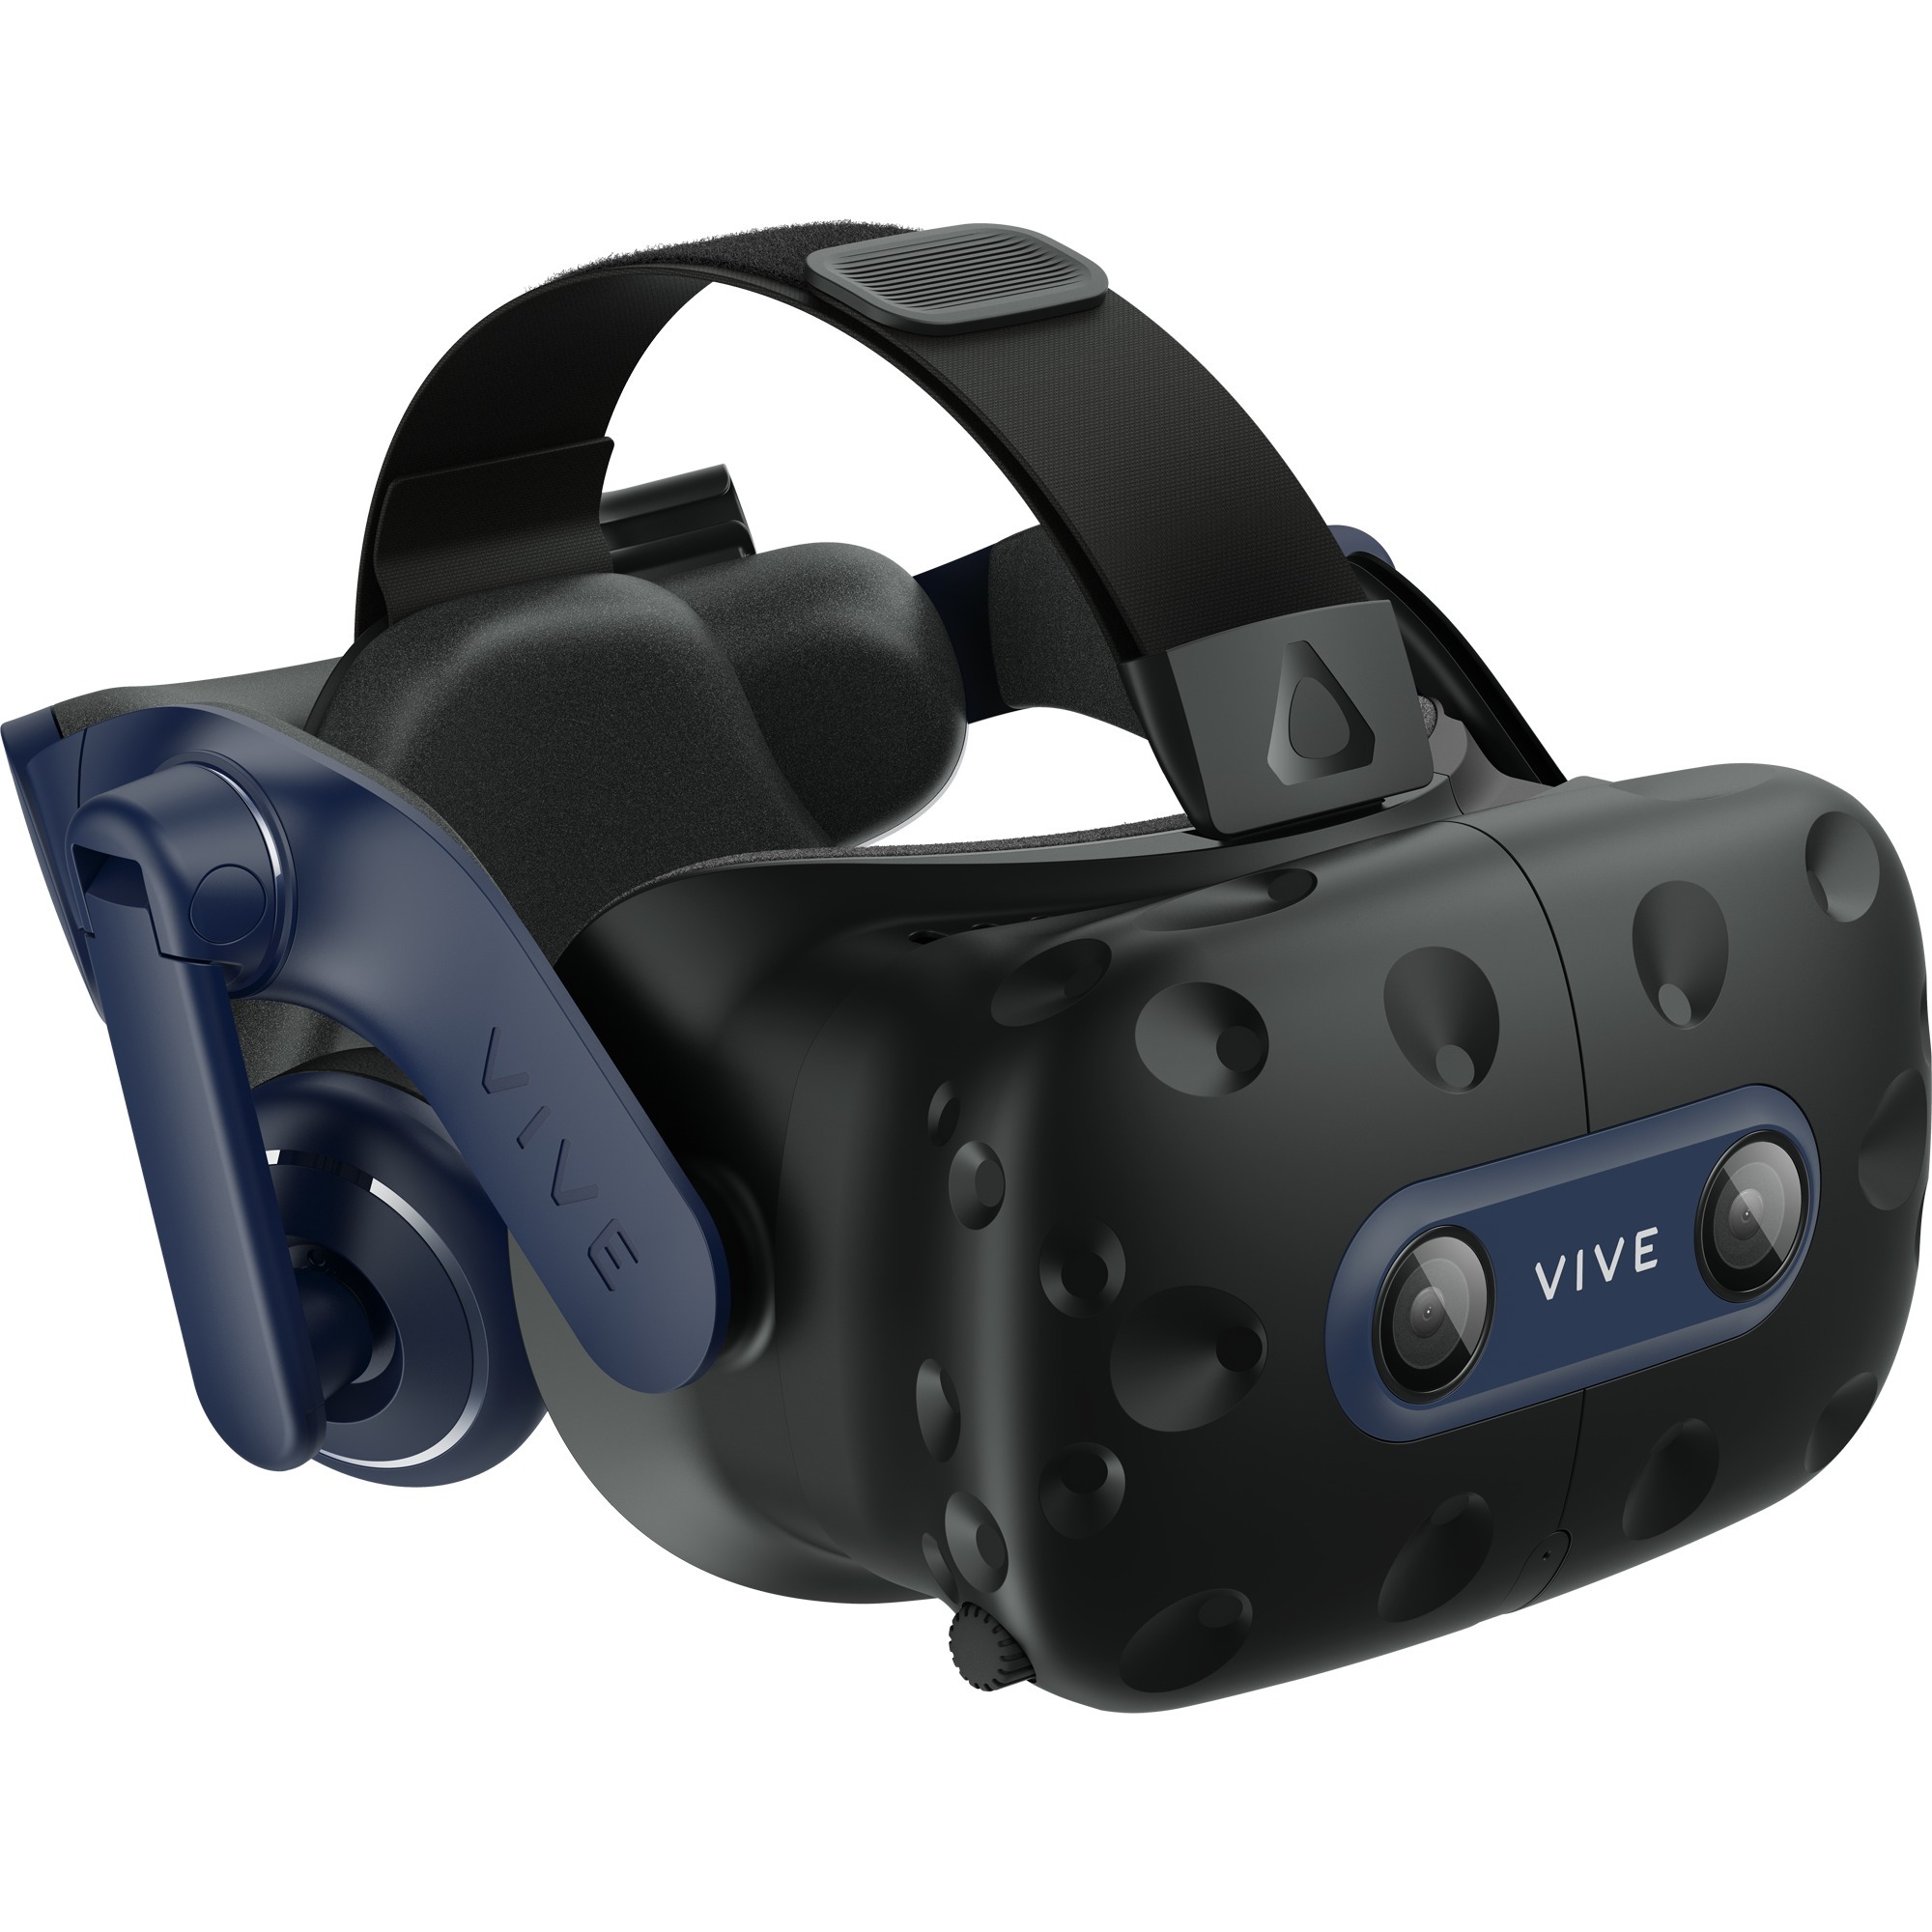 Image of Alternate - Vive Pro 2, VR-Brille online einkaufen bei Alternate